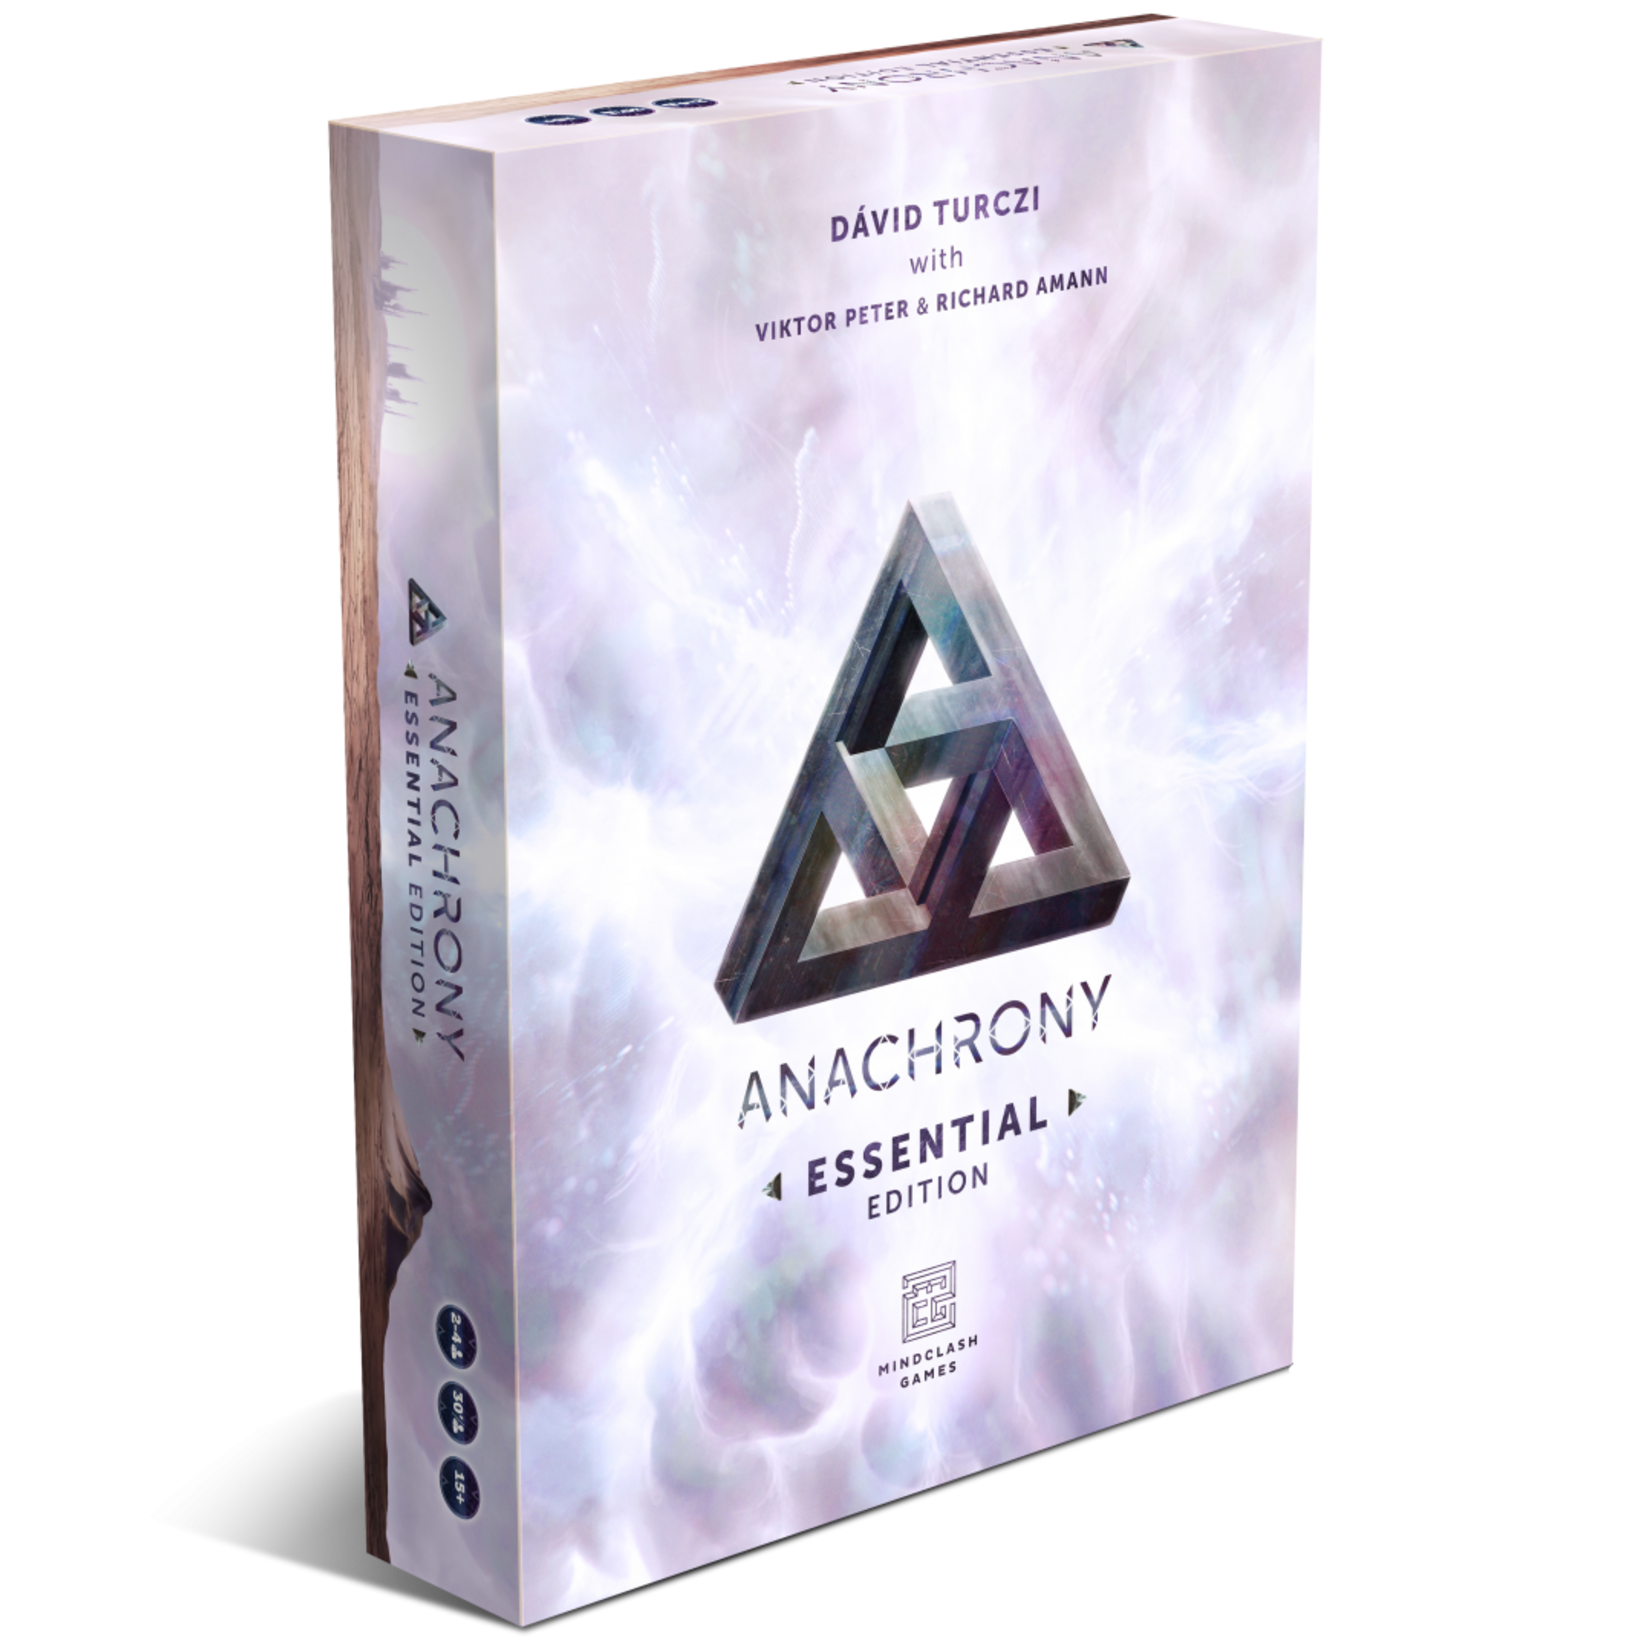 MINDCLASH GAMES LLC Anachrony Essential Edition